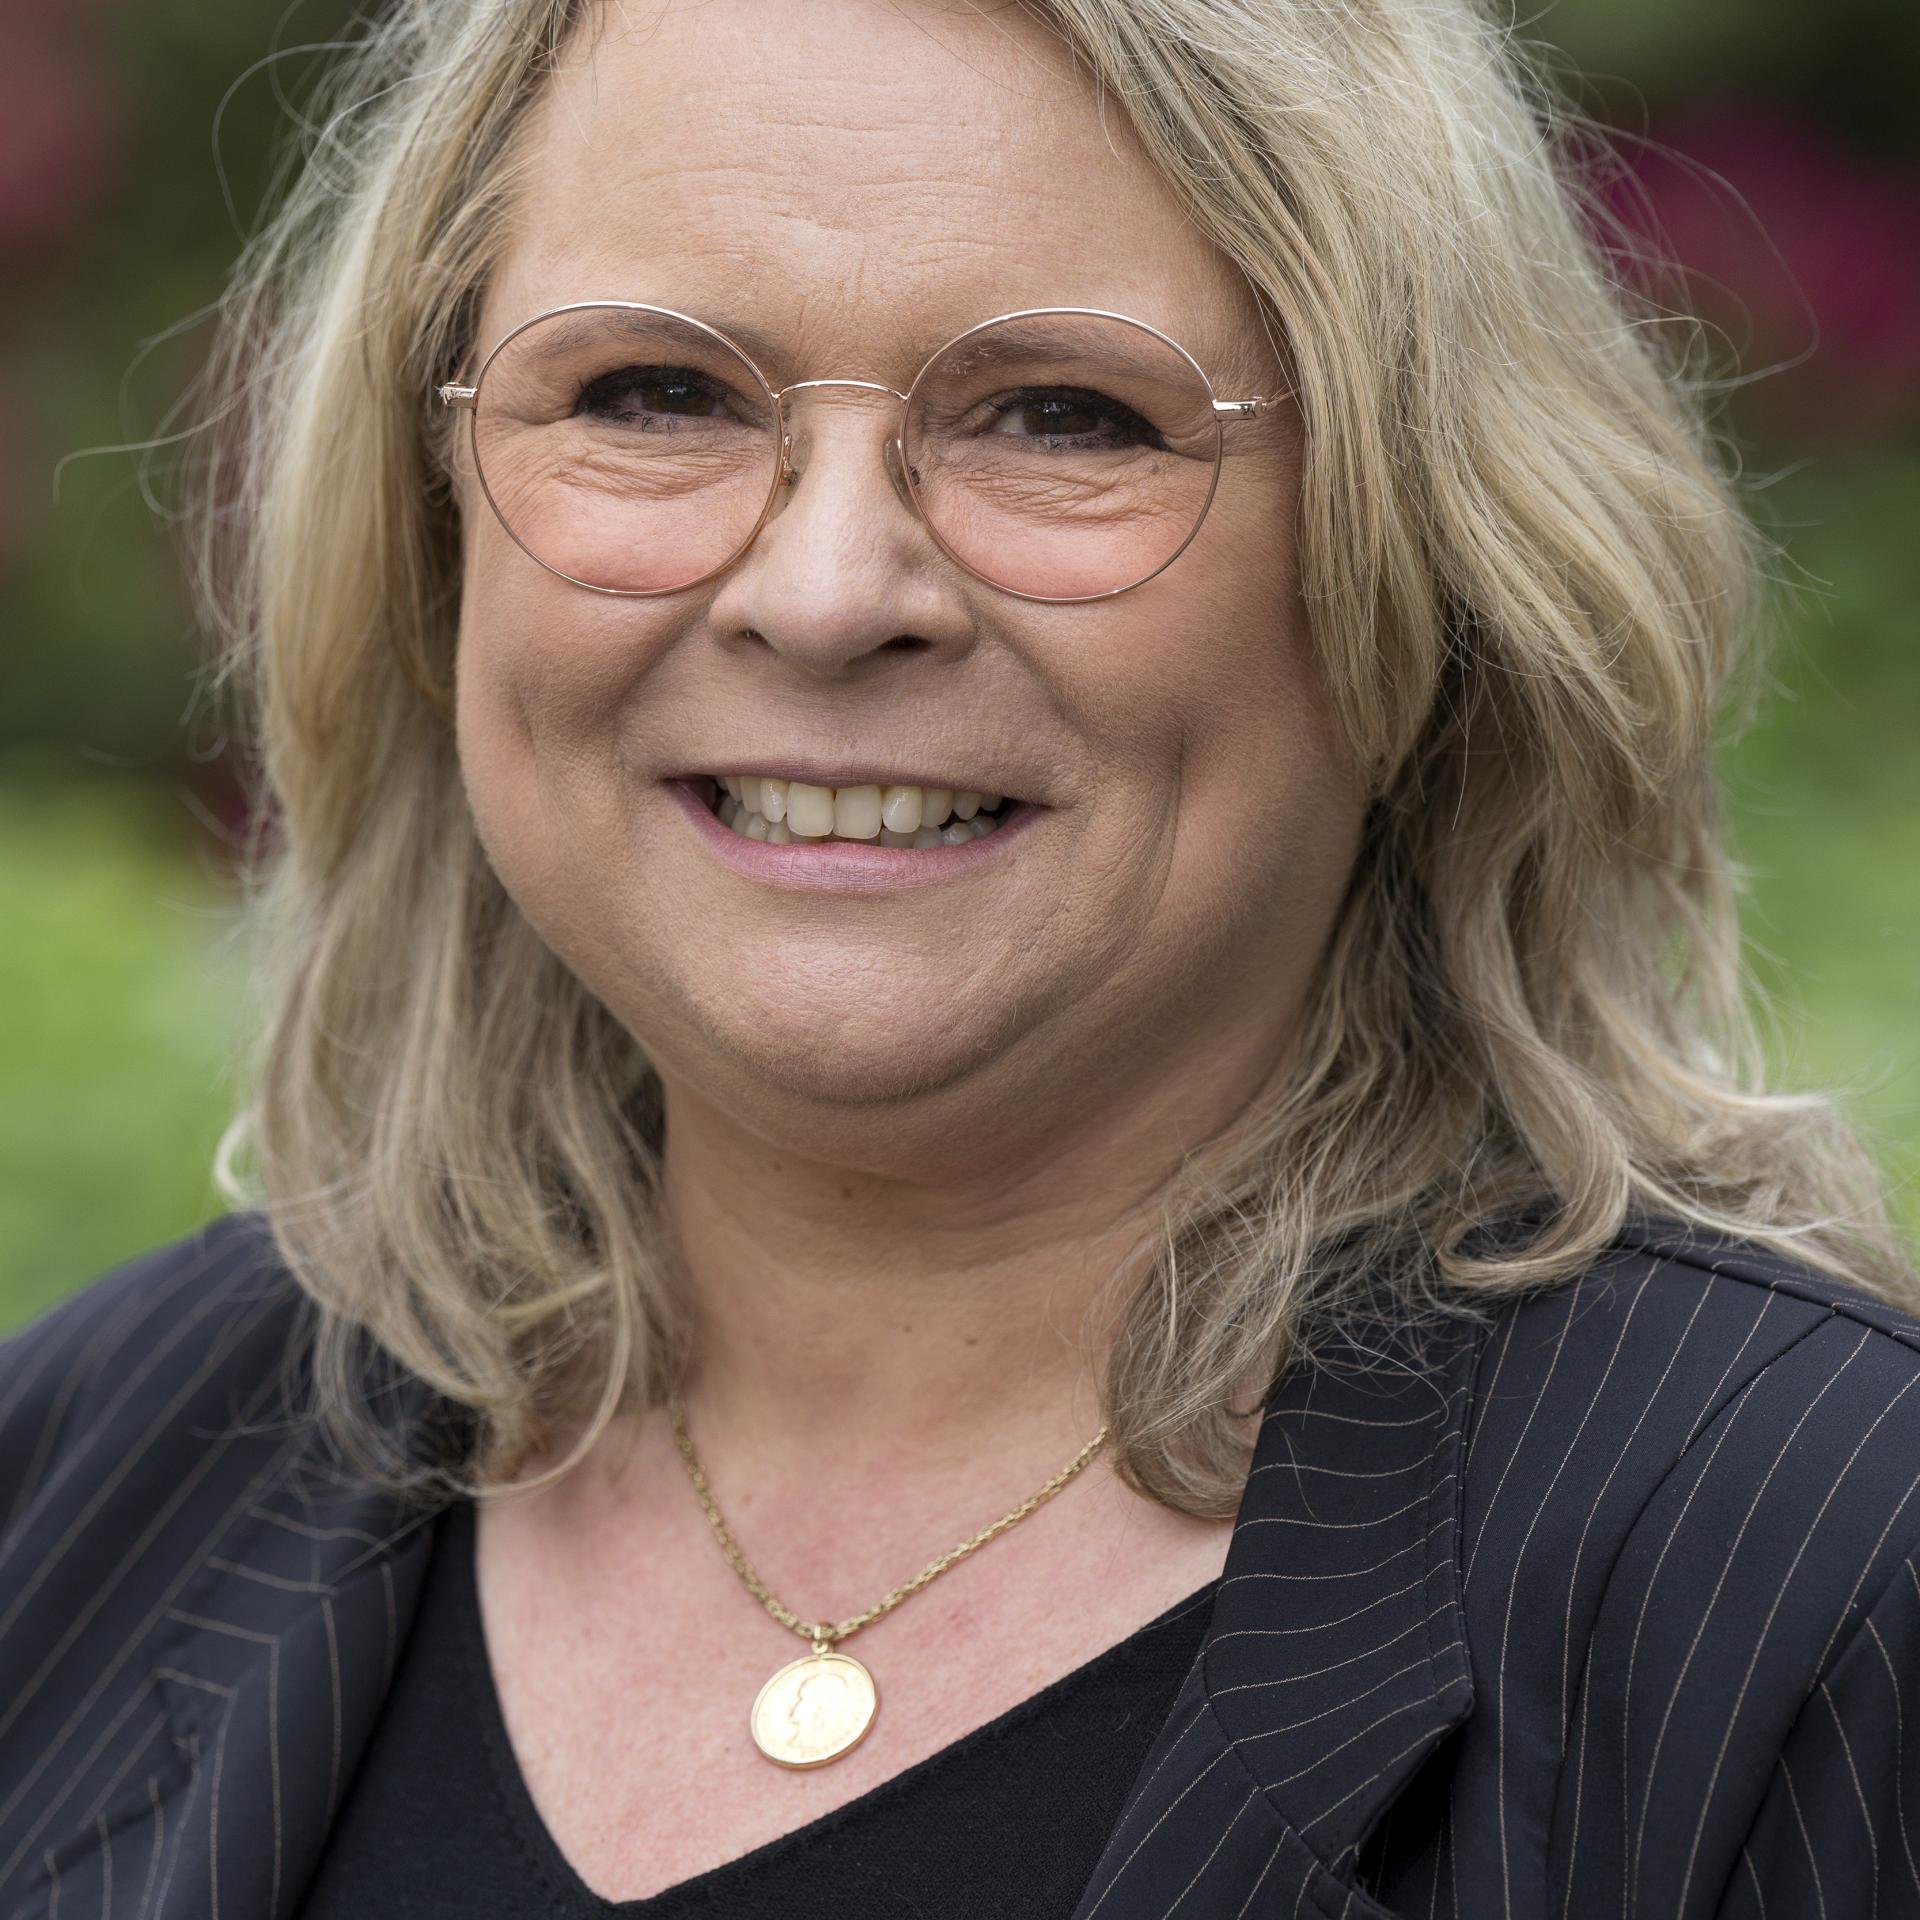 Nathalie Pullens, VVD